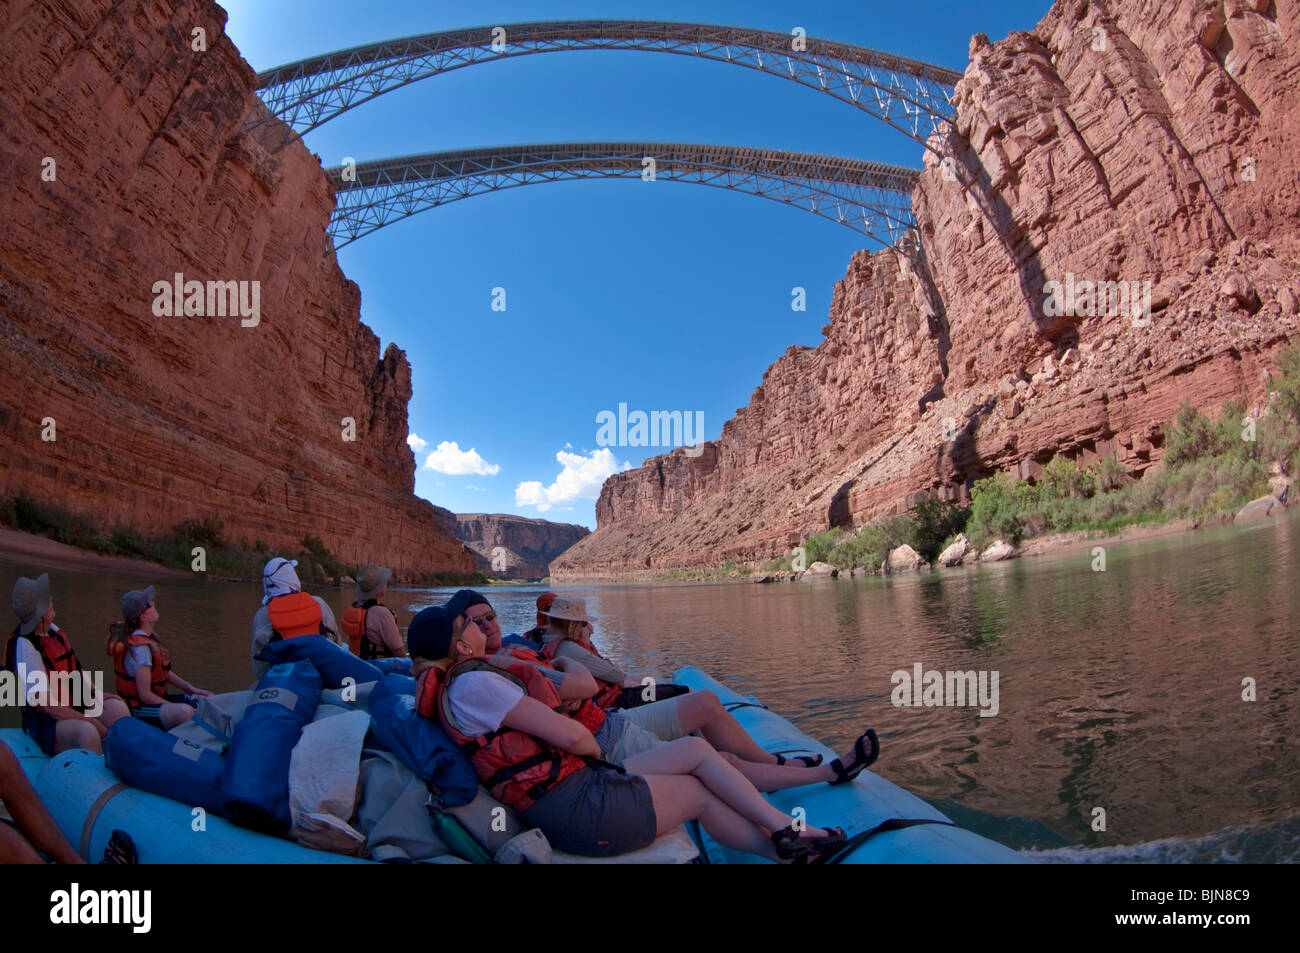 River rafters disfrutar de una balsa por el Río Colorado a medida que pasan bajo el puente Navajo, Grand Canyon National Park Foto de stock